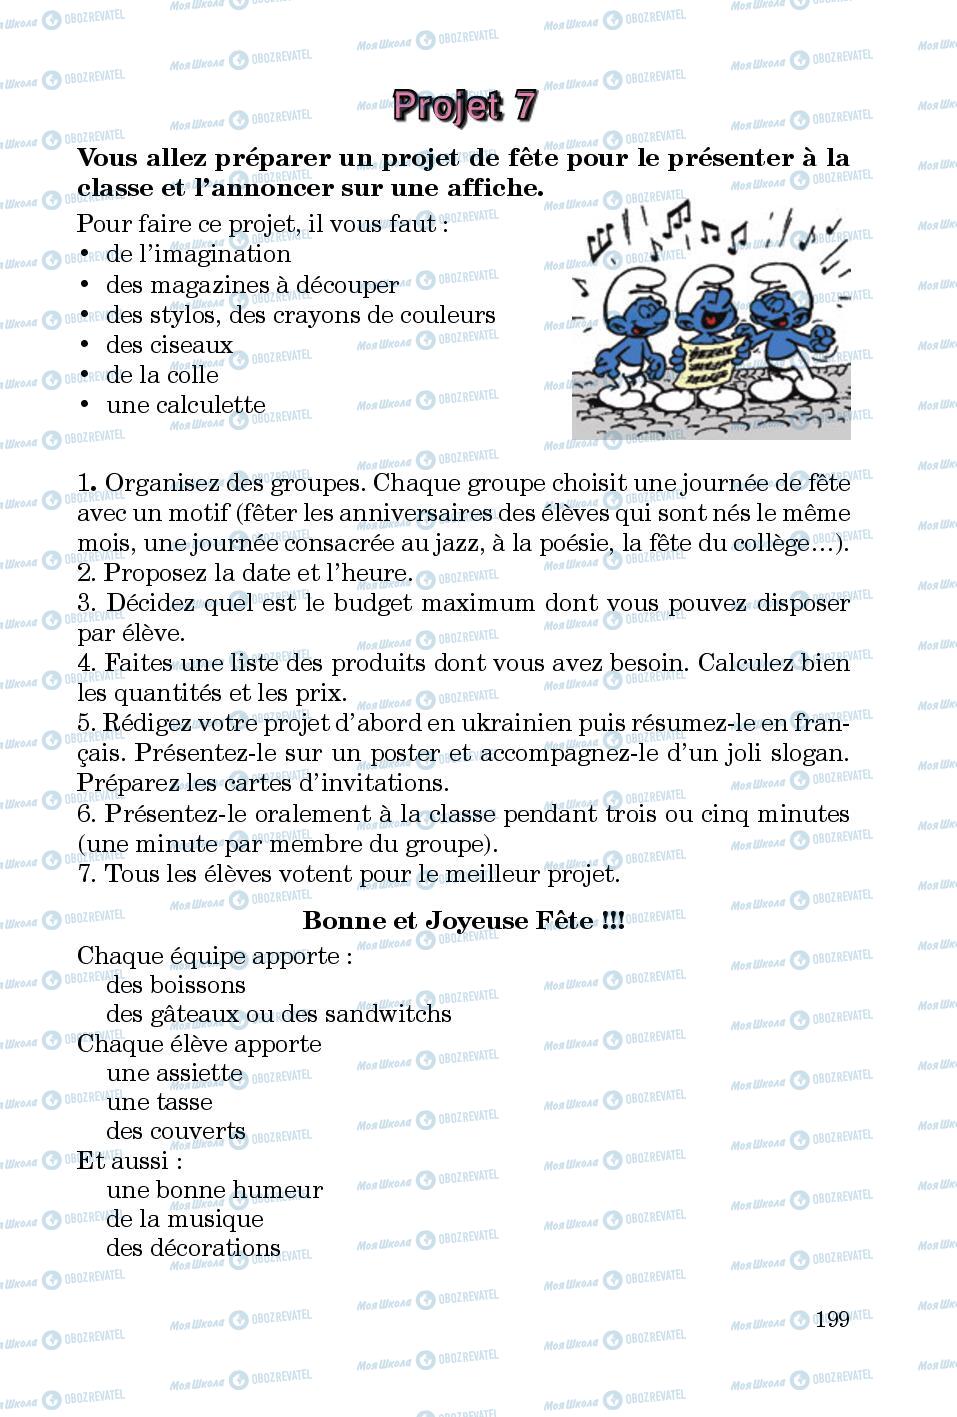 Підручники Французька мова 5 клас сторінка 199